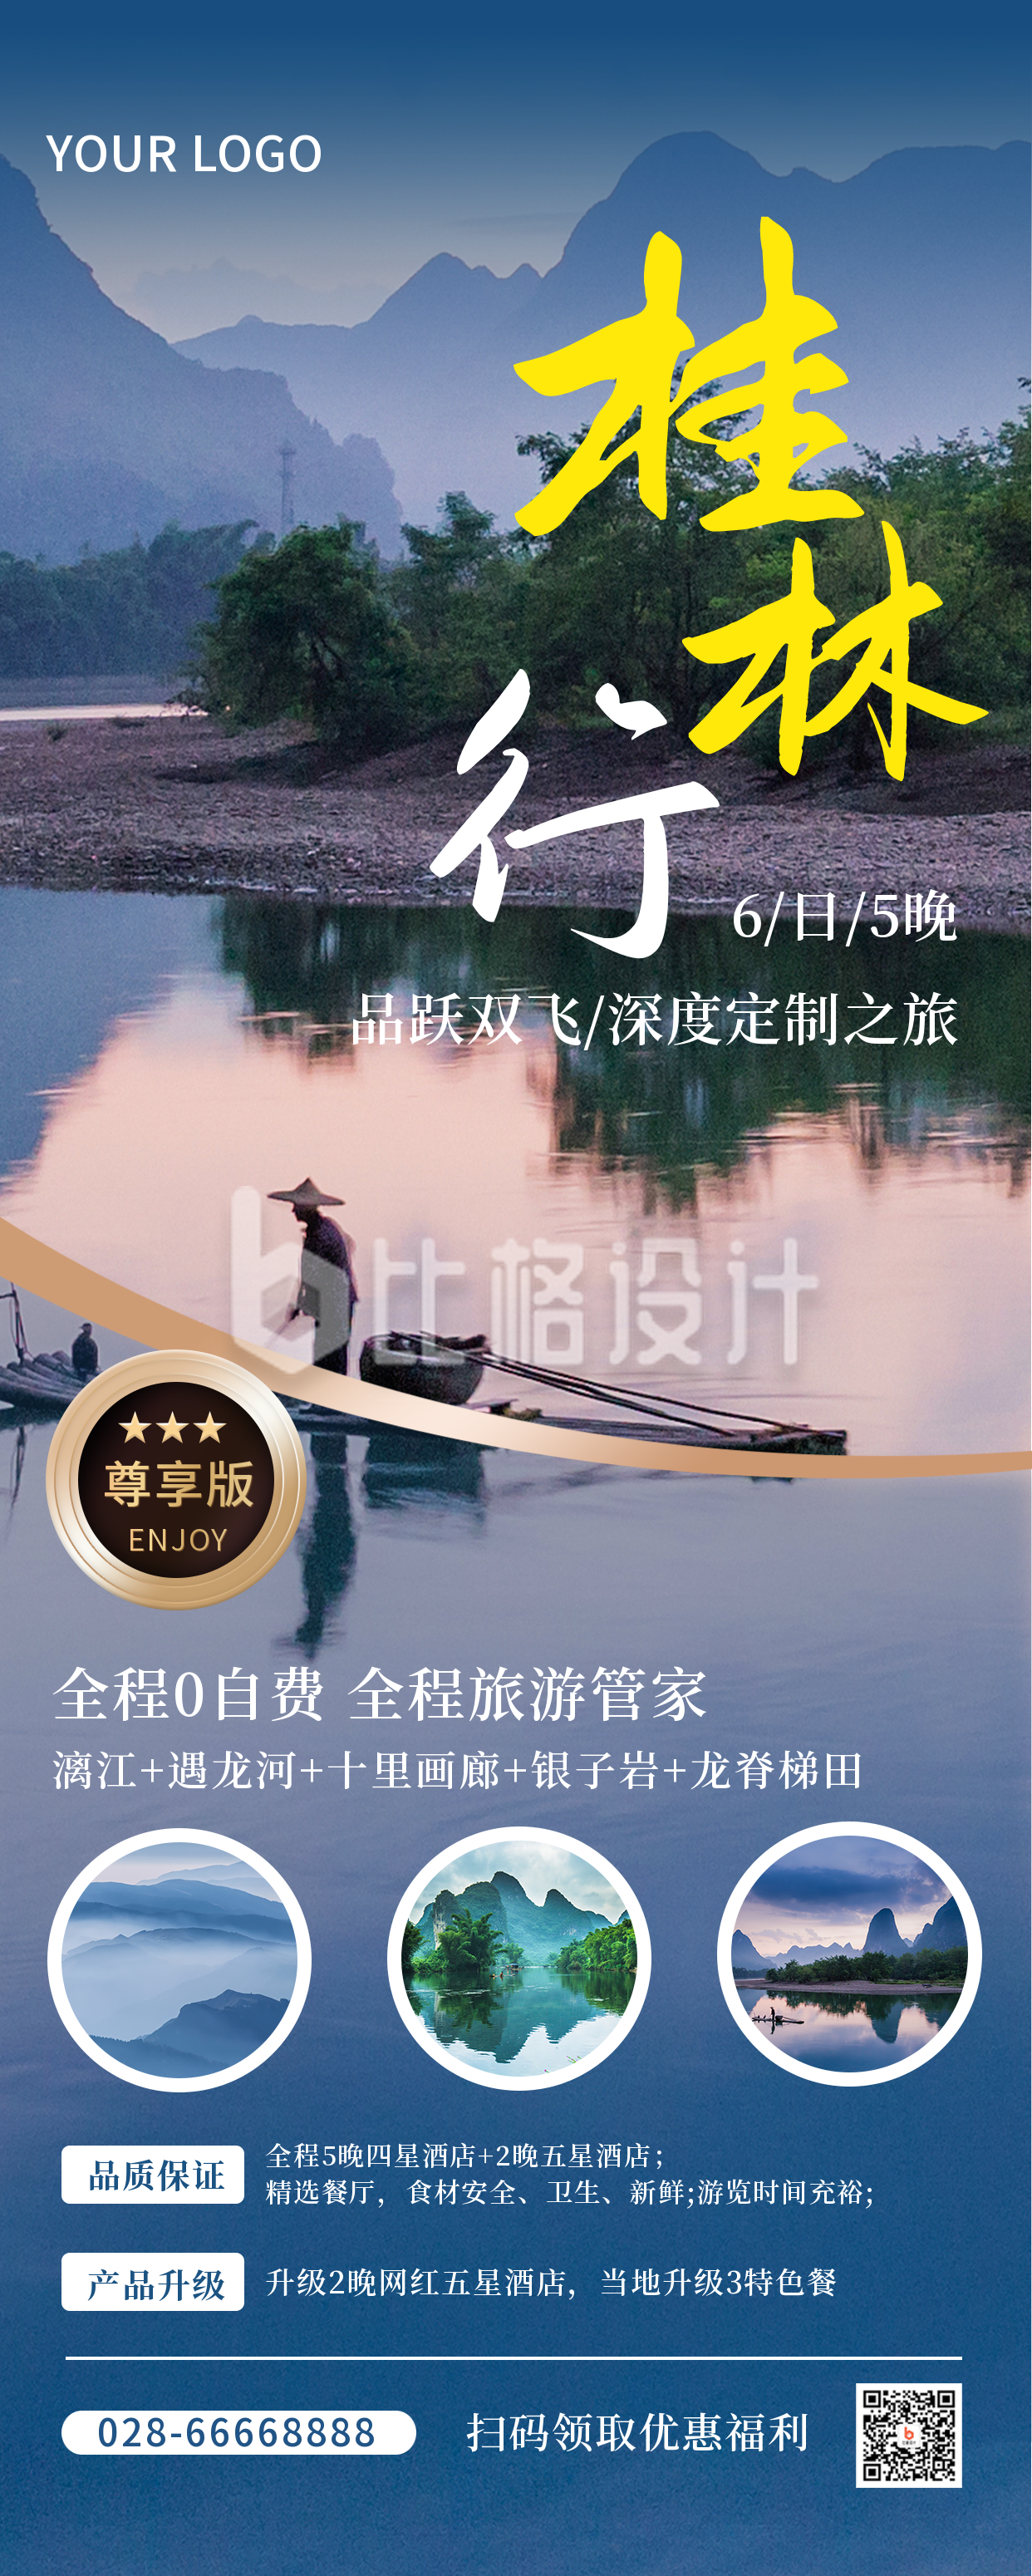 桂林旅游商务实景蓝色长图海报